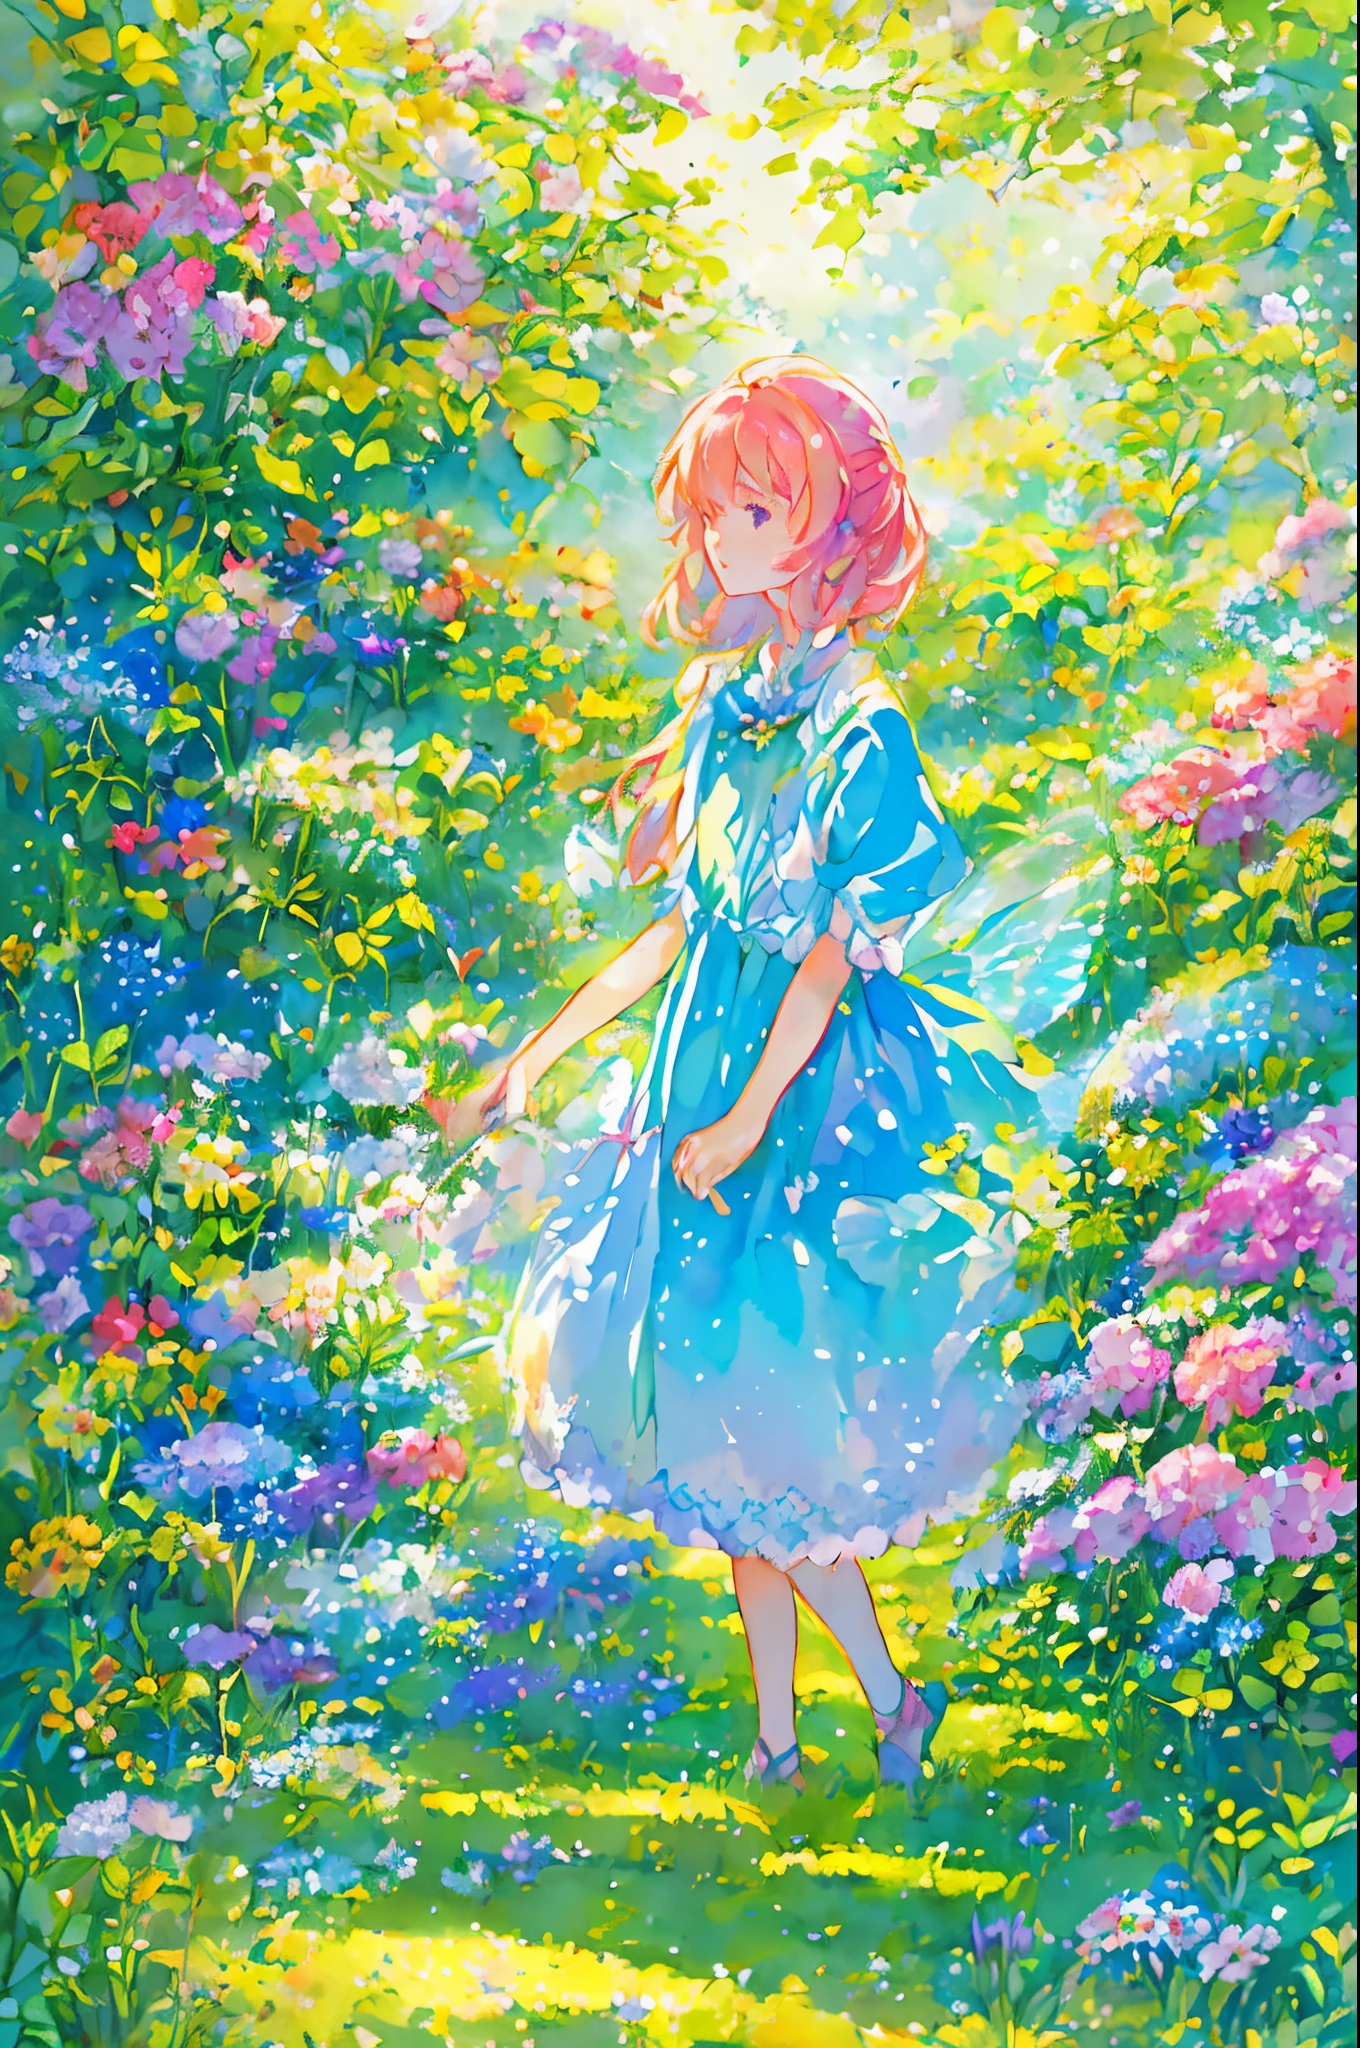 穿着仙女服装的美丽的女孩, 被鲜花和蝴蝶包围. 内容: 水彩绘画. 风格: 反复无常又细腻, 就像儿童书籍里的插图.